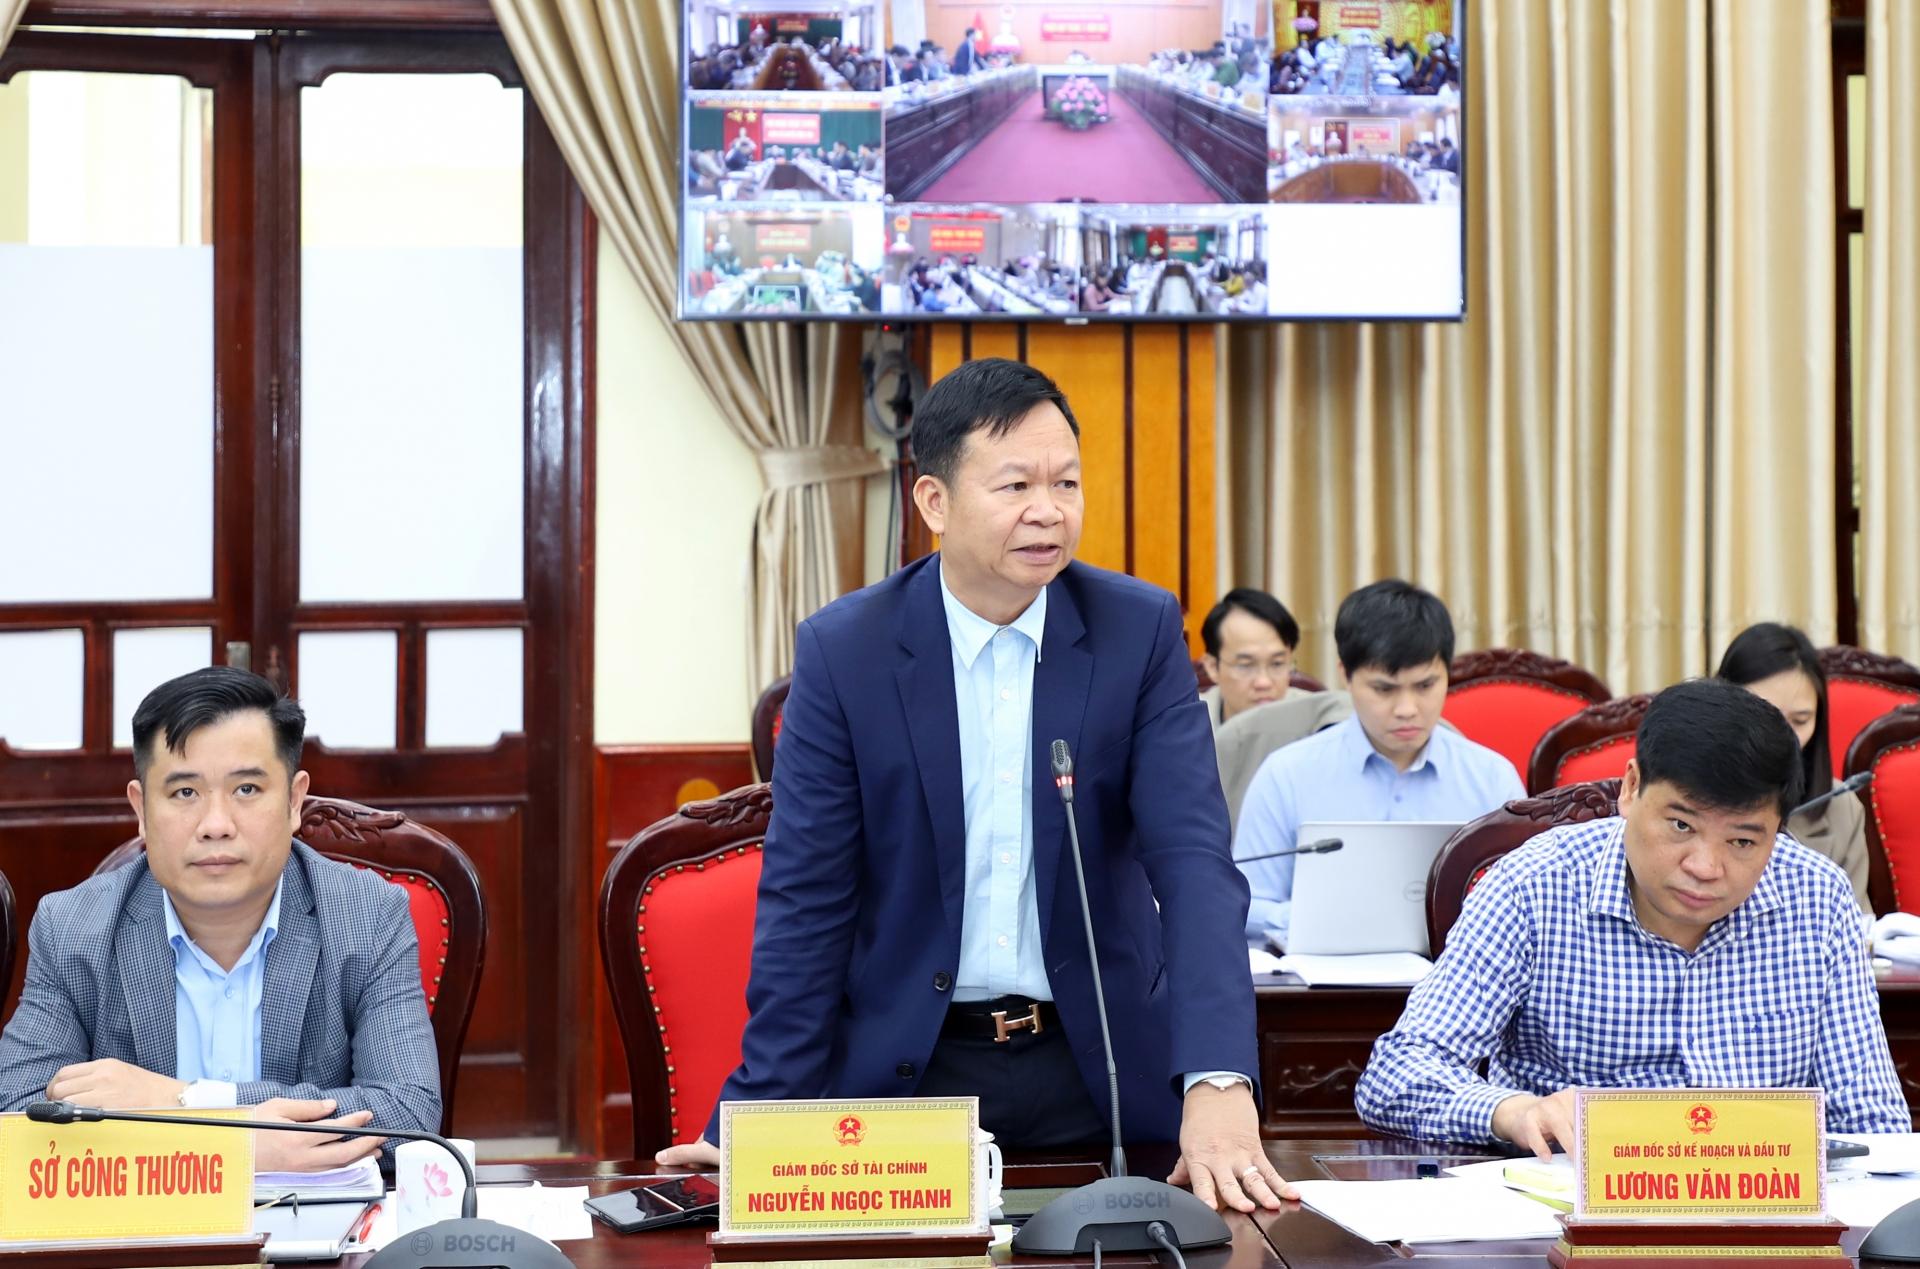 Giám đốc Sở Tài chính Nguyễn Ngọc Thanh đề nghị các địa phương nắm rõ các khoản thu để đảm bảo công tác thu ngân sách theo lộ trình đăng ký.